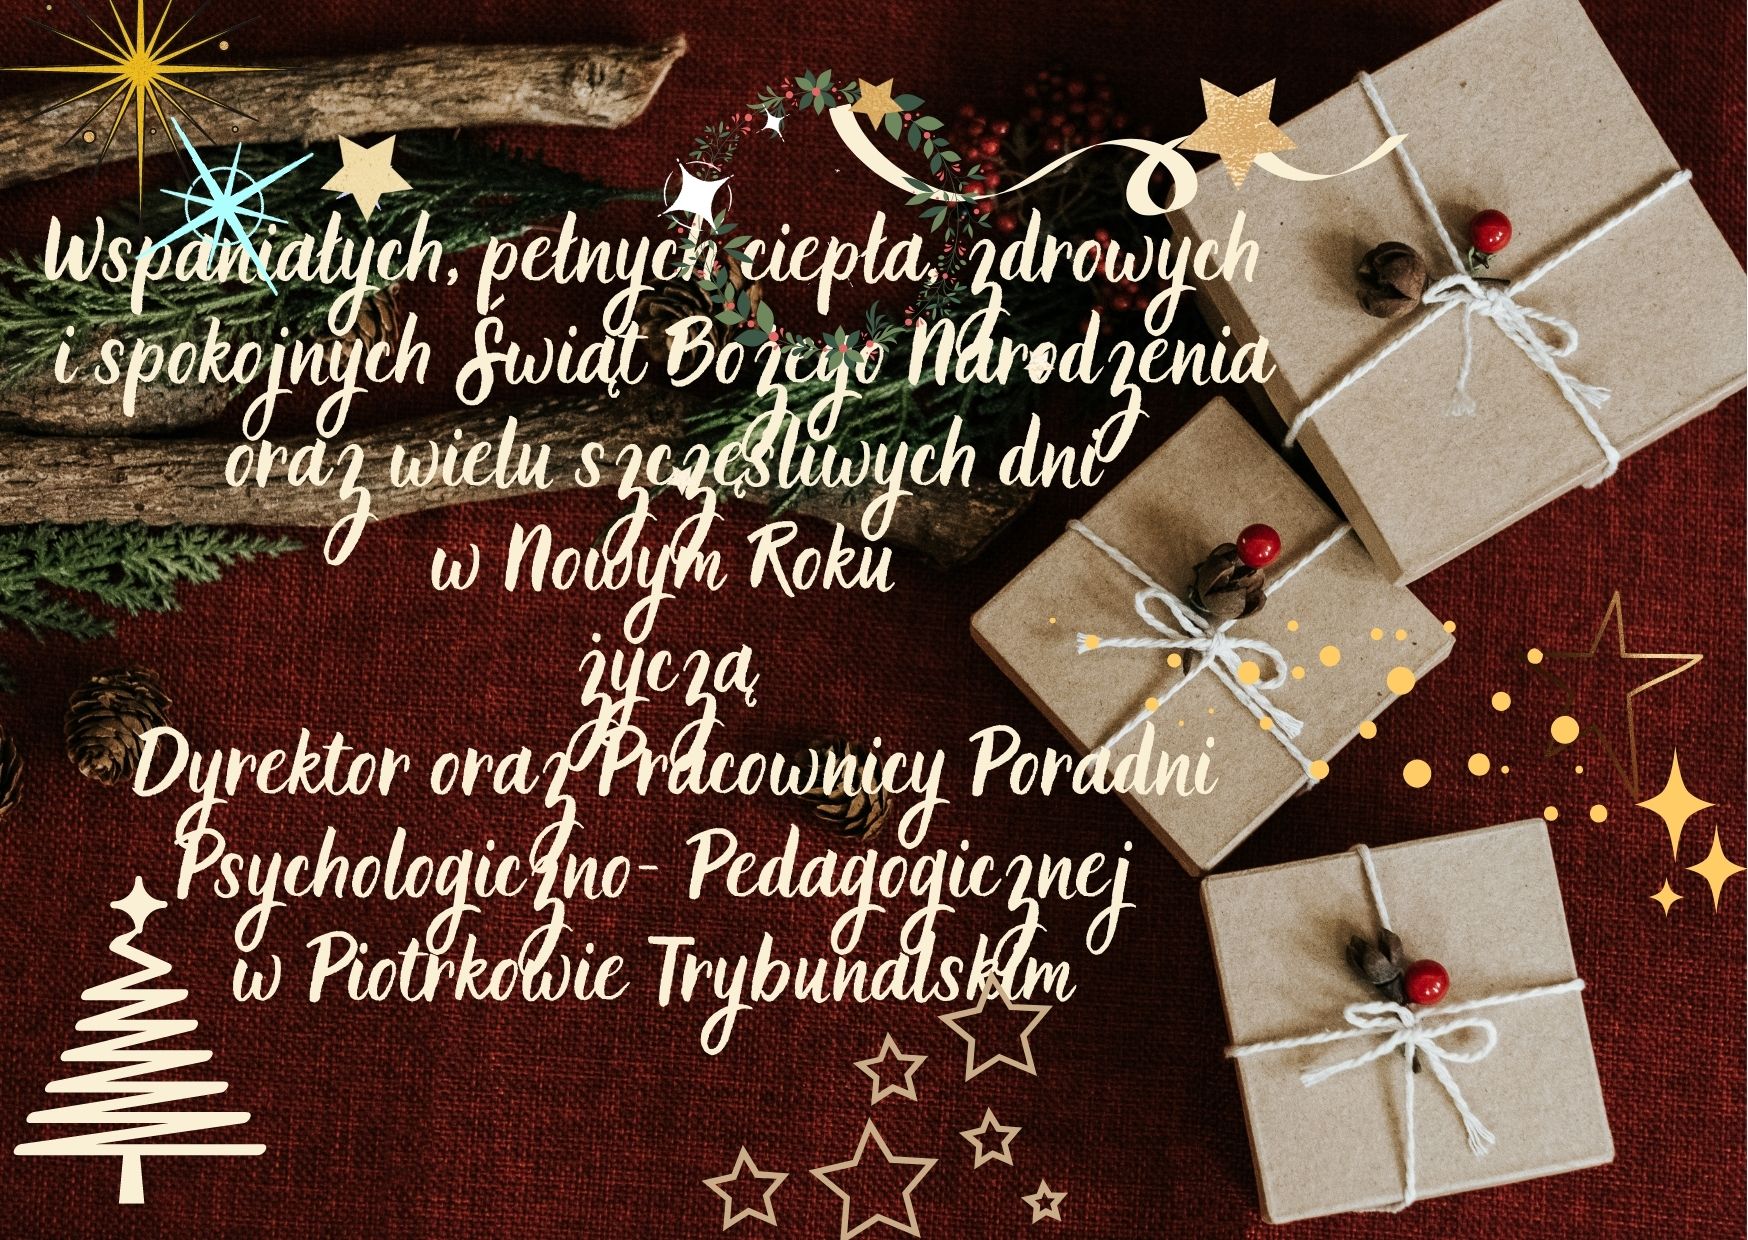 Życzenia świąteczne Wspaniałych, pełnych ciepła, zdrowych  i spokojnych Świąt Bożego Narodzenia  oraz wielu szczęśliwych dni  w Nowym Roku życzą  Dyrektor oraz Pracownicy Poradni Psychologiczno- Pedagogicznej  w Piotrkowie Trybunalskim 